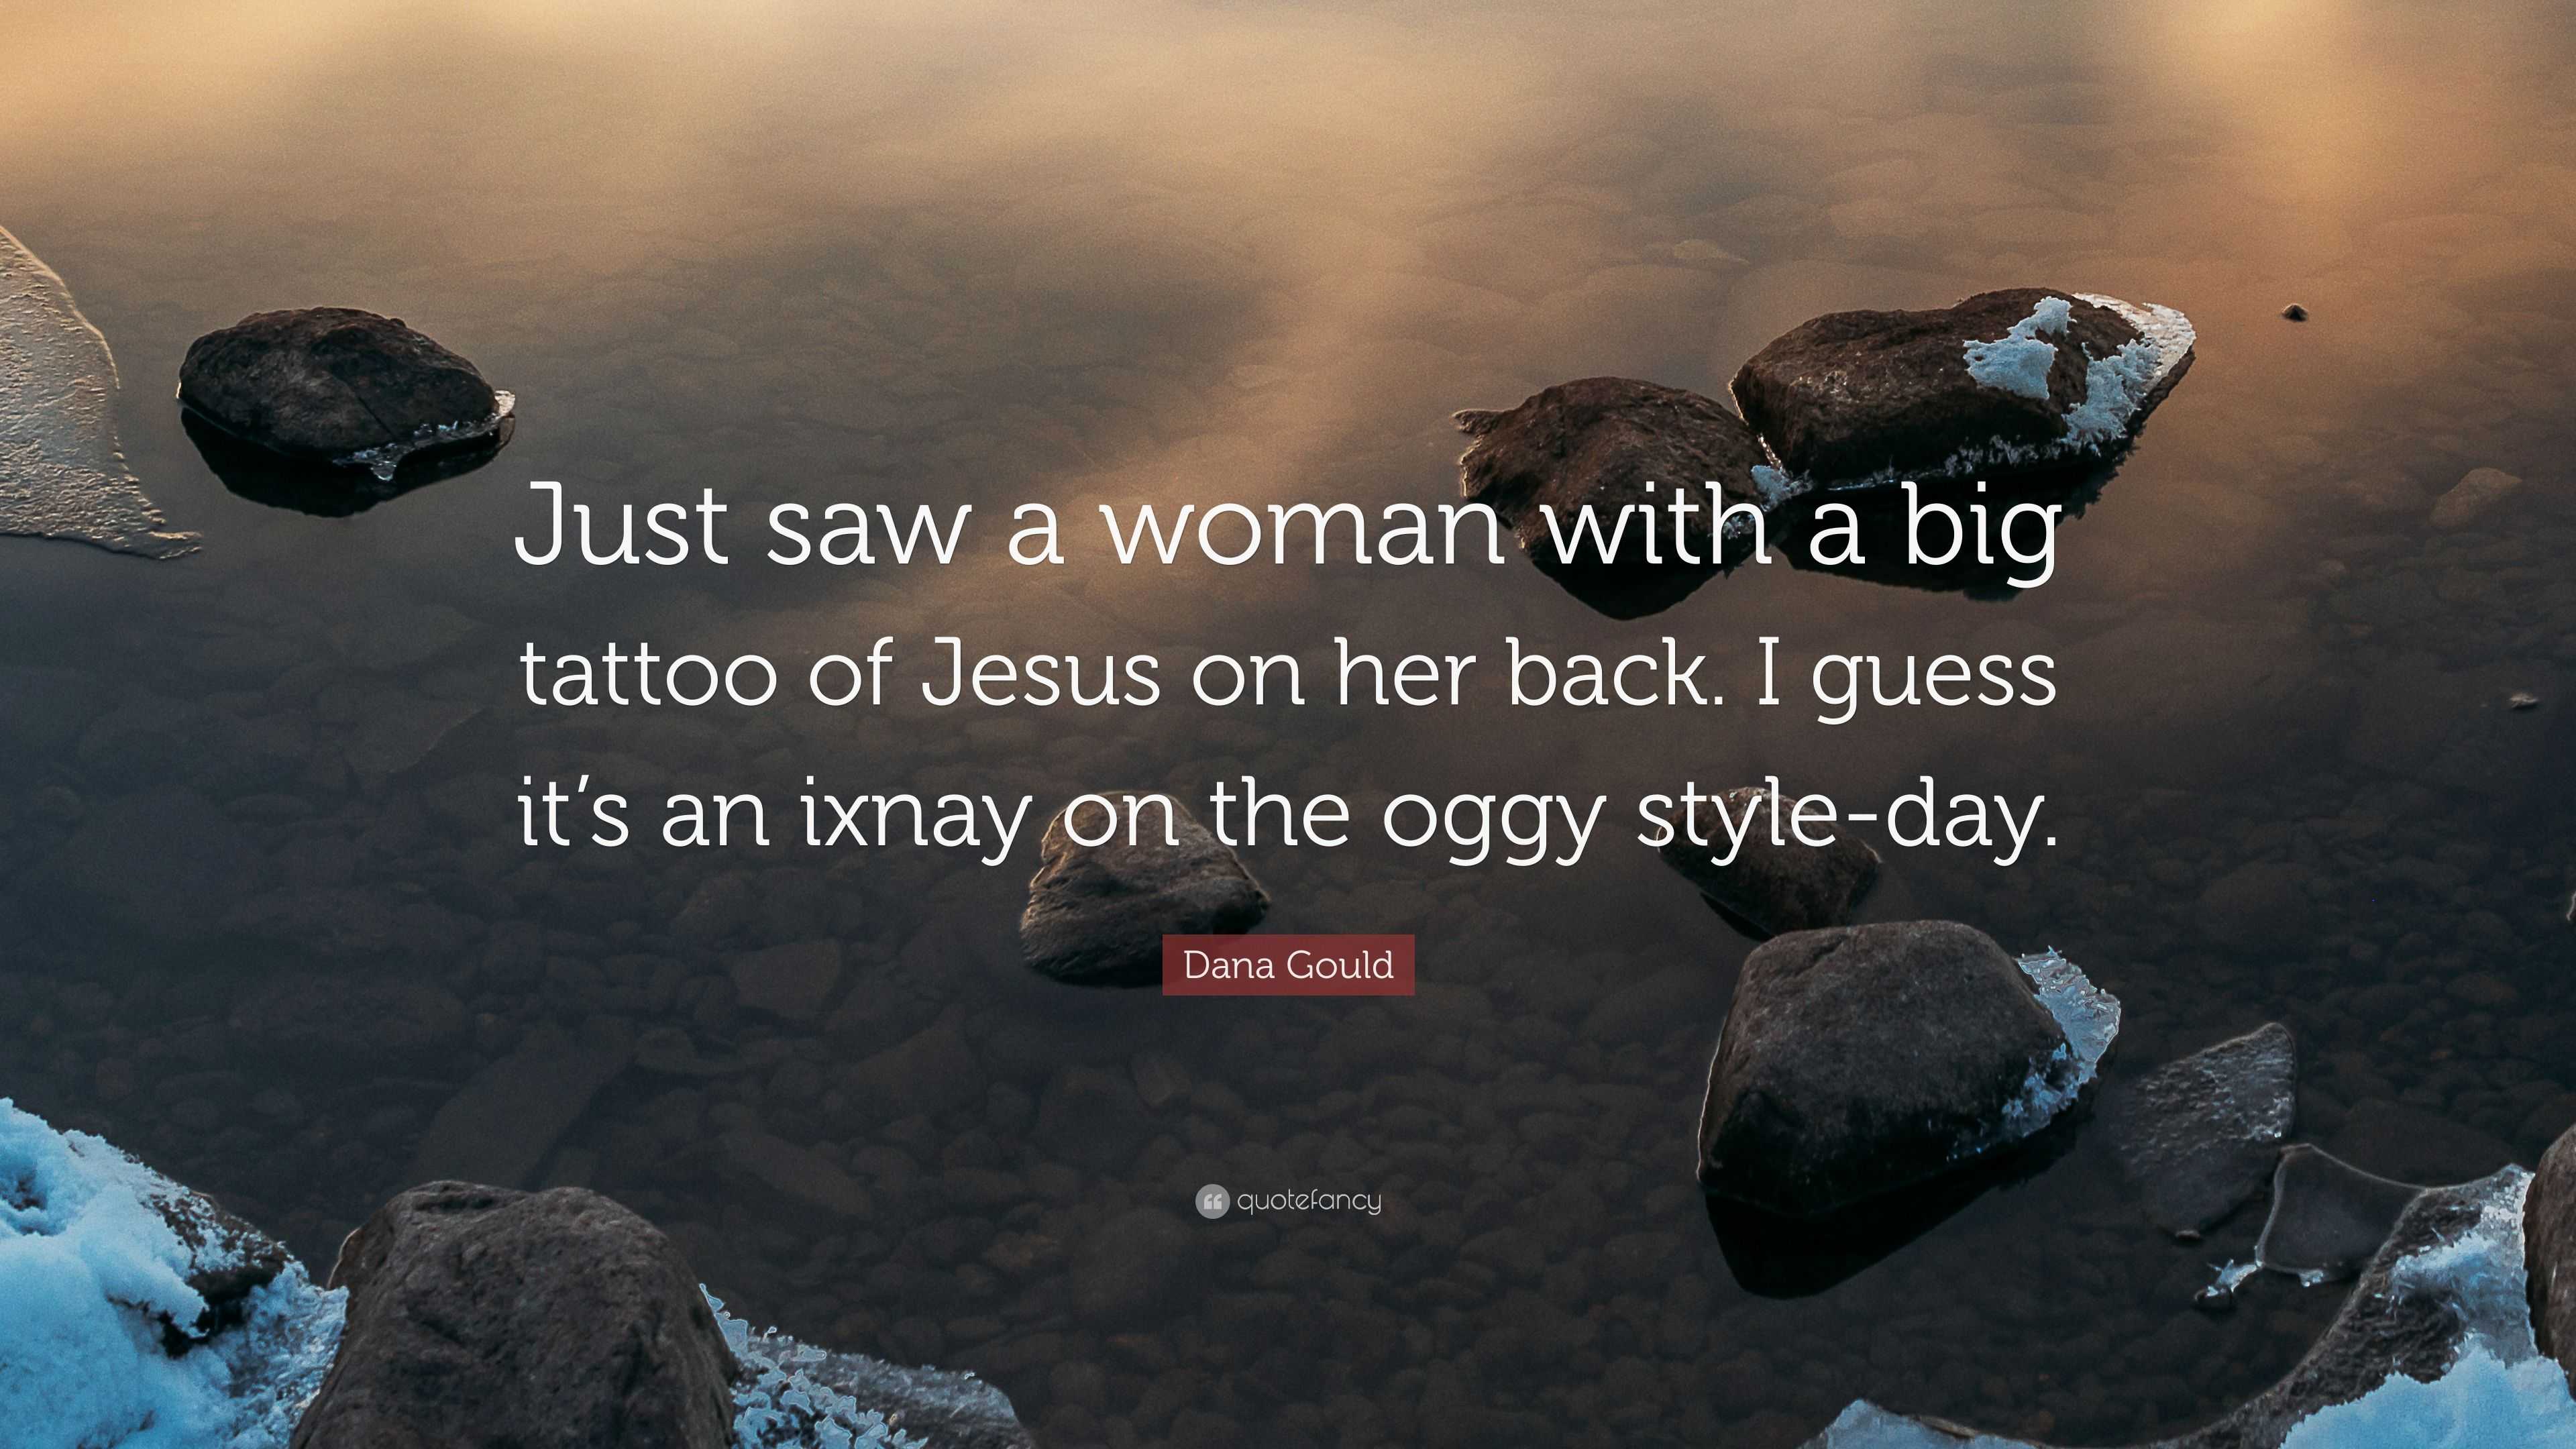 Ulejlighed Afskrække skillevæg Dana Gould Quote: “Just saw a woman with a big tattoo of Jesus on her back.